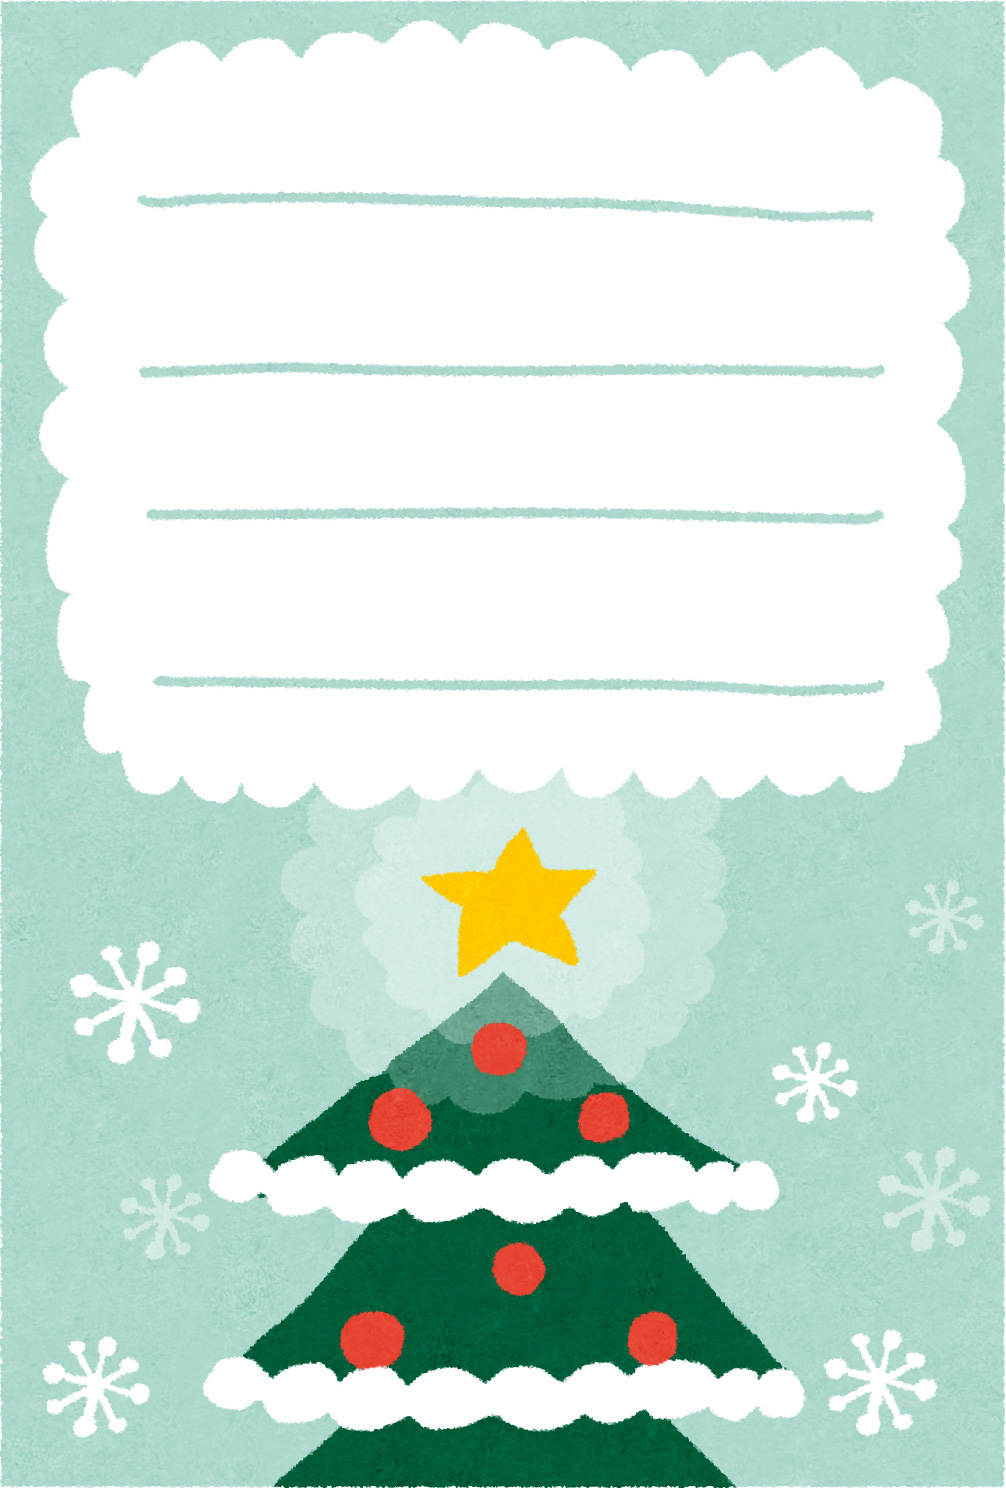 クリスマスカードのテンプレート クリスマスツリー かわいいフリー素材集 いらすとや